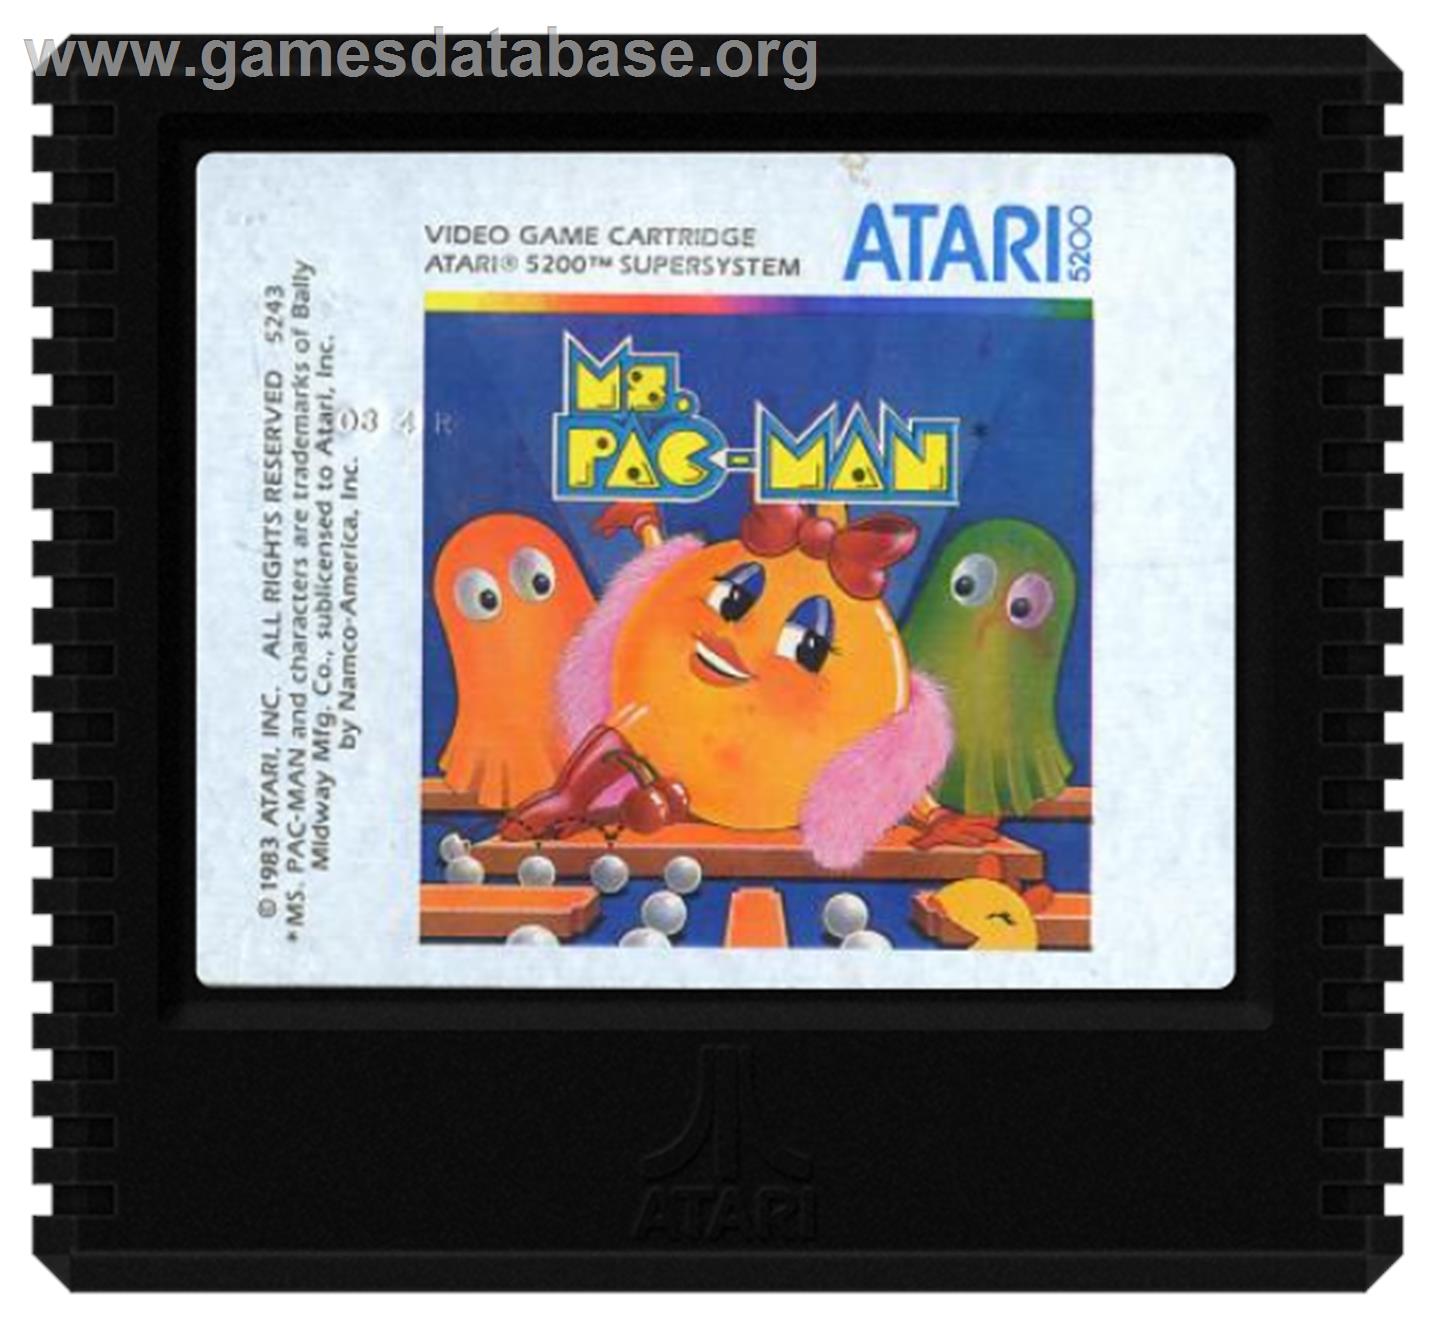 Ms. Pac-Man - Atari 5200 - Artwork - Cartridge